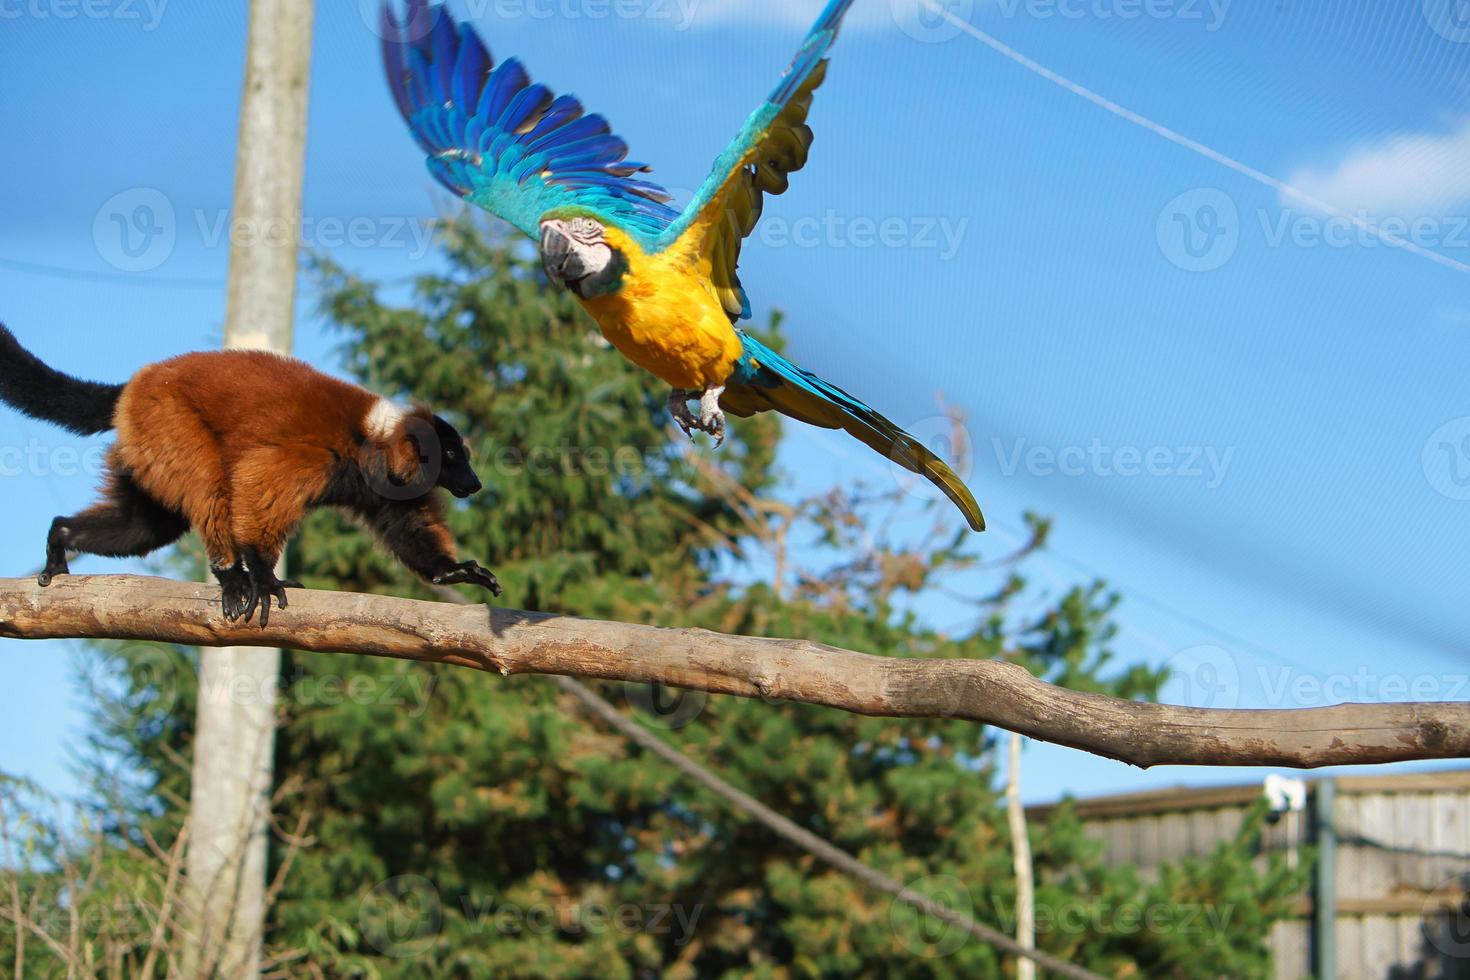 guacamayo amarillo vuela sobre un mono macaco en una rama. foto graciosa